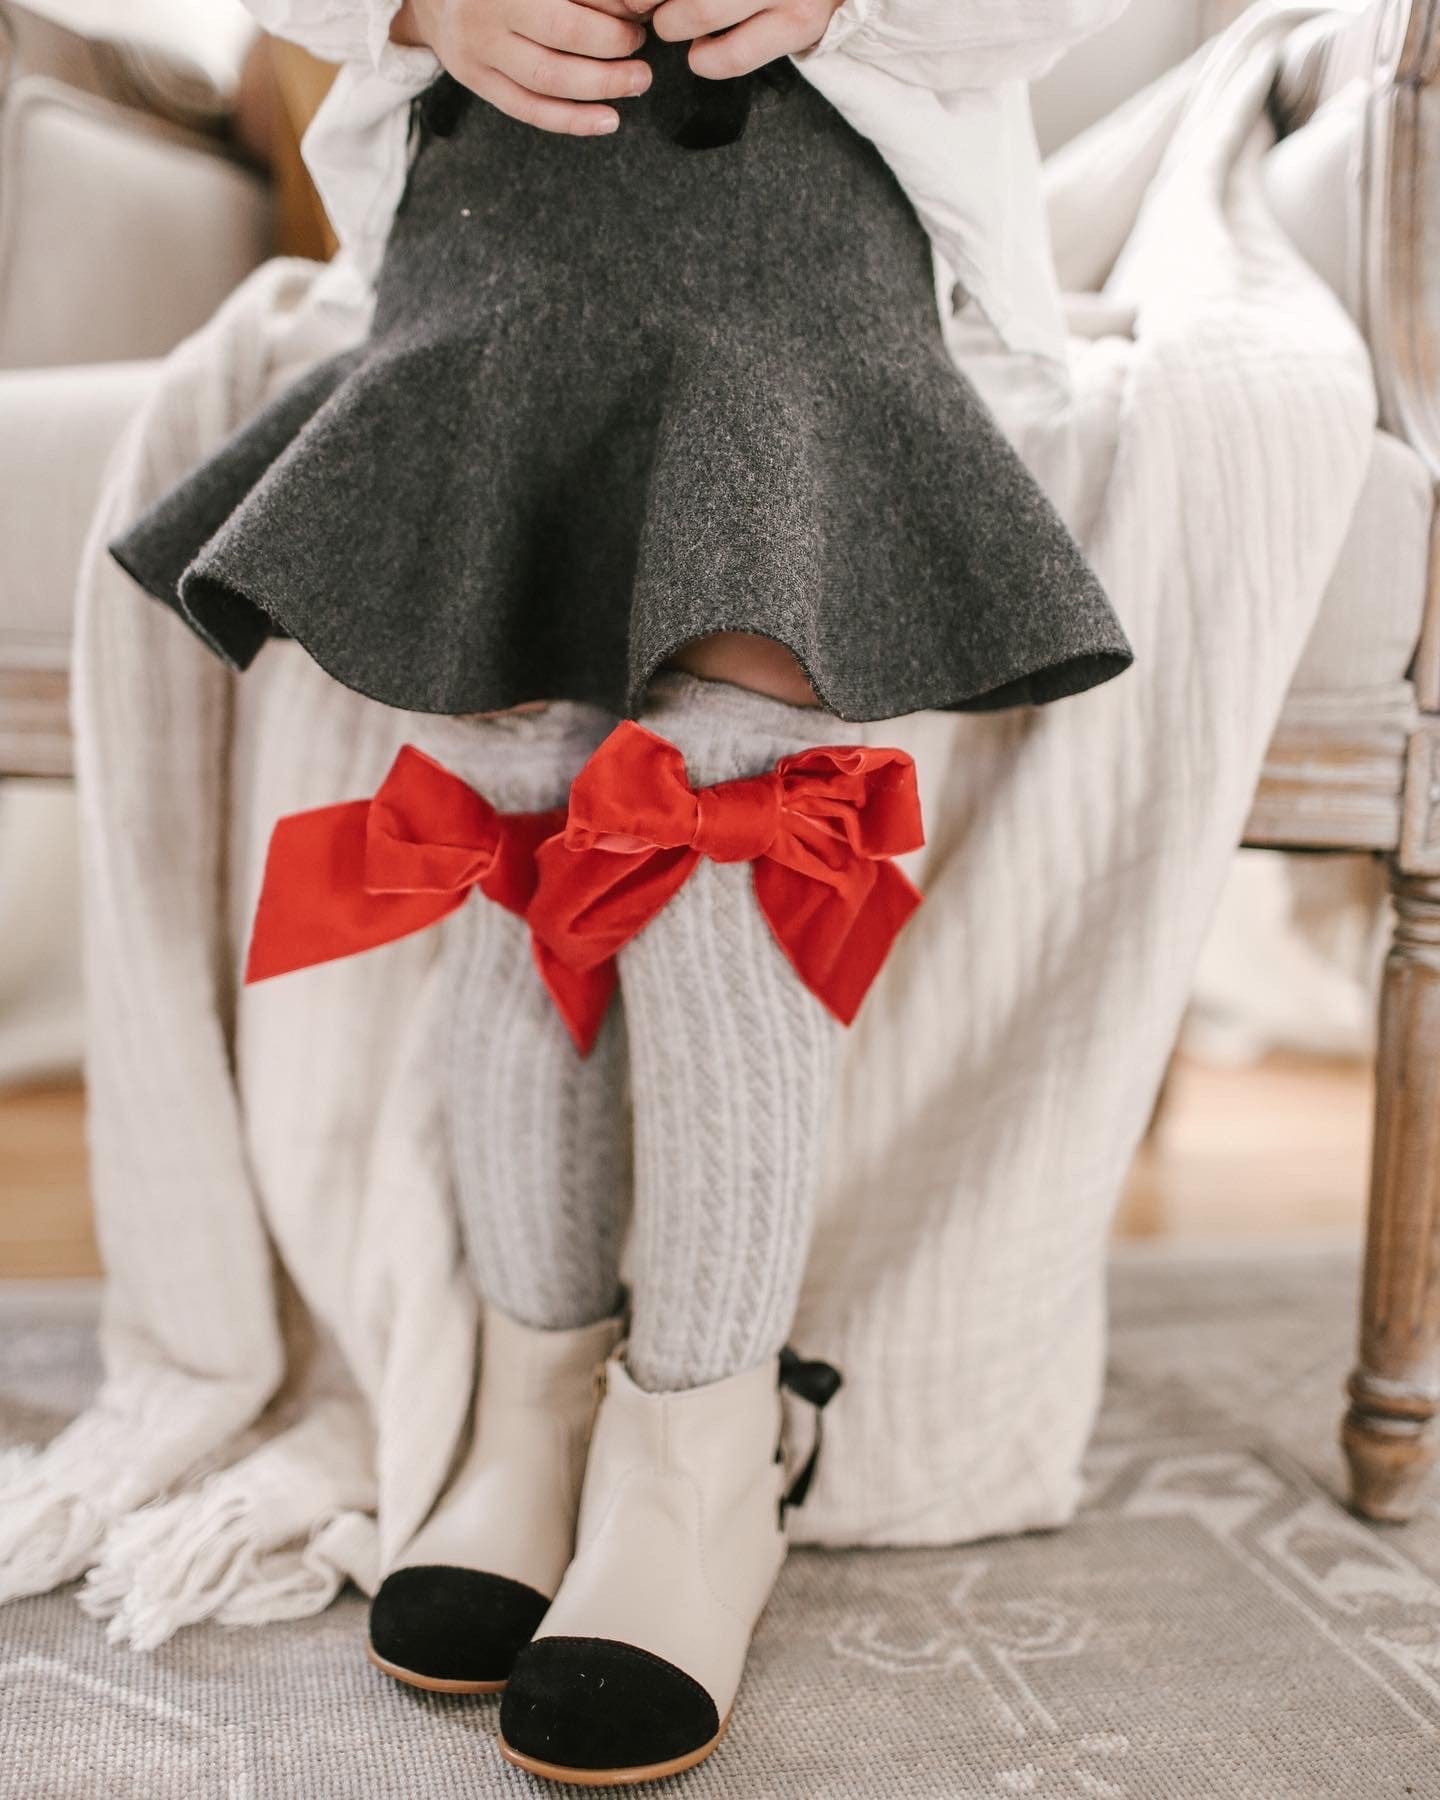 Grey Knee High Socks with Velvet Bows – Petite Maison Kids